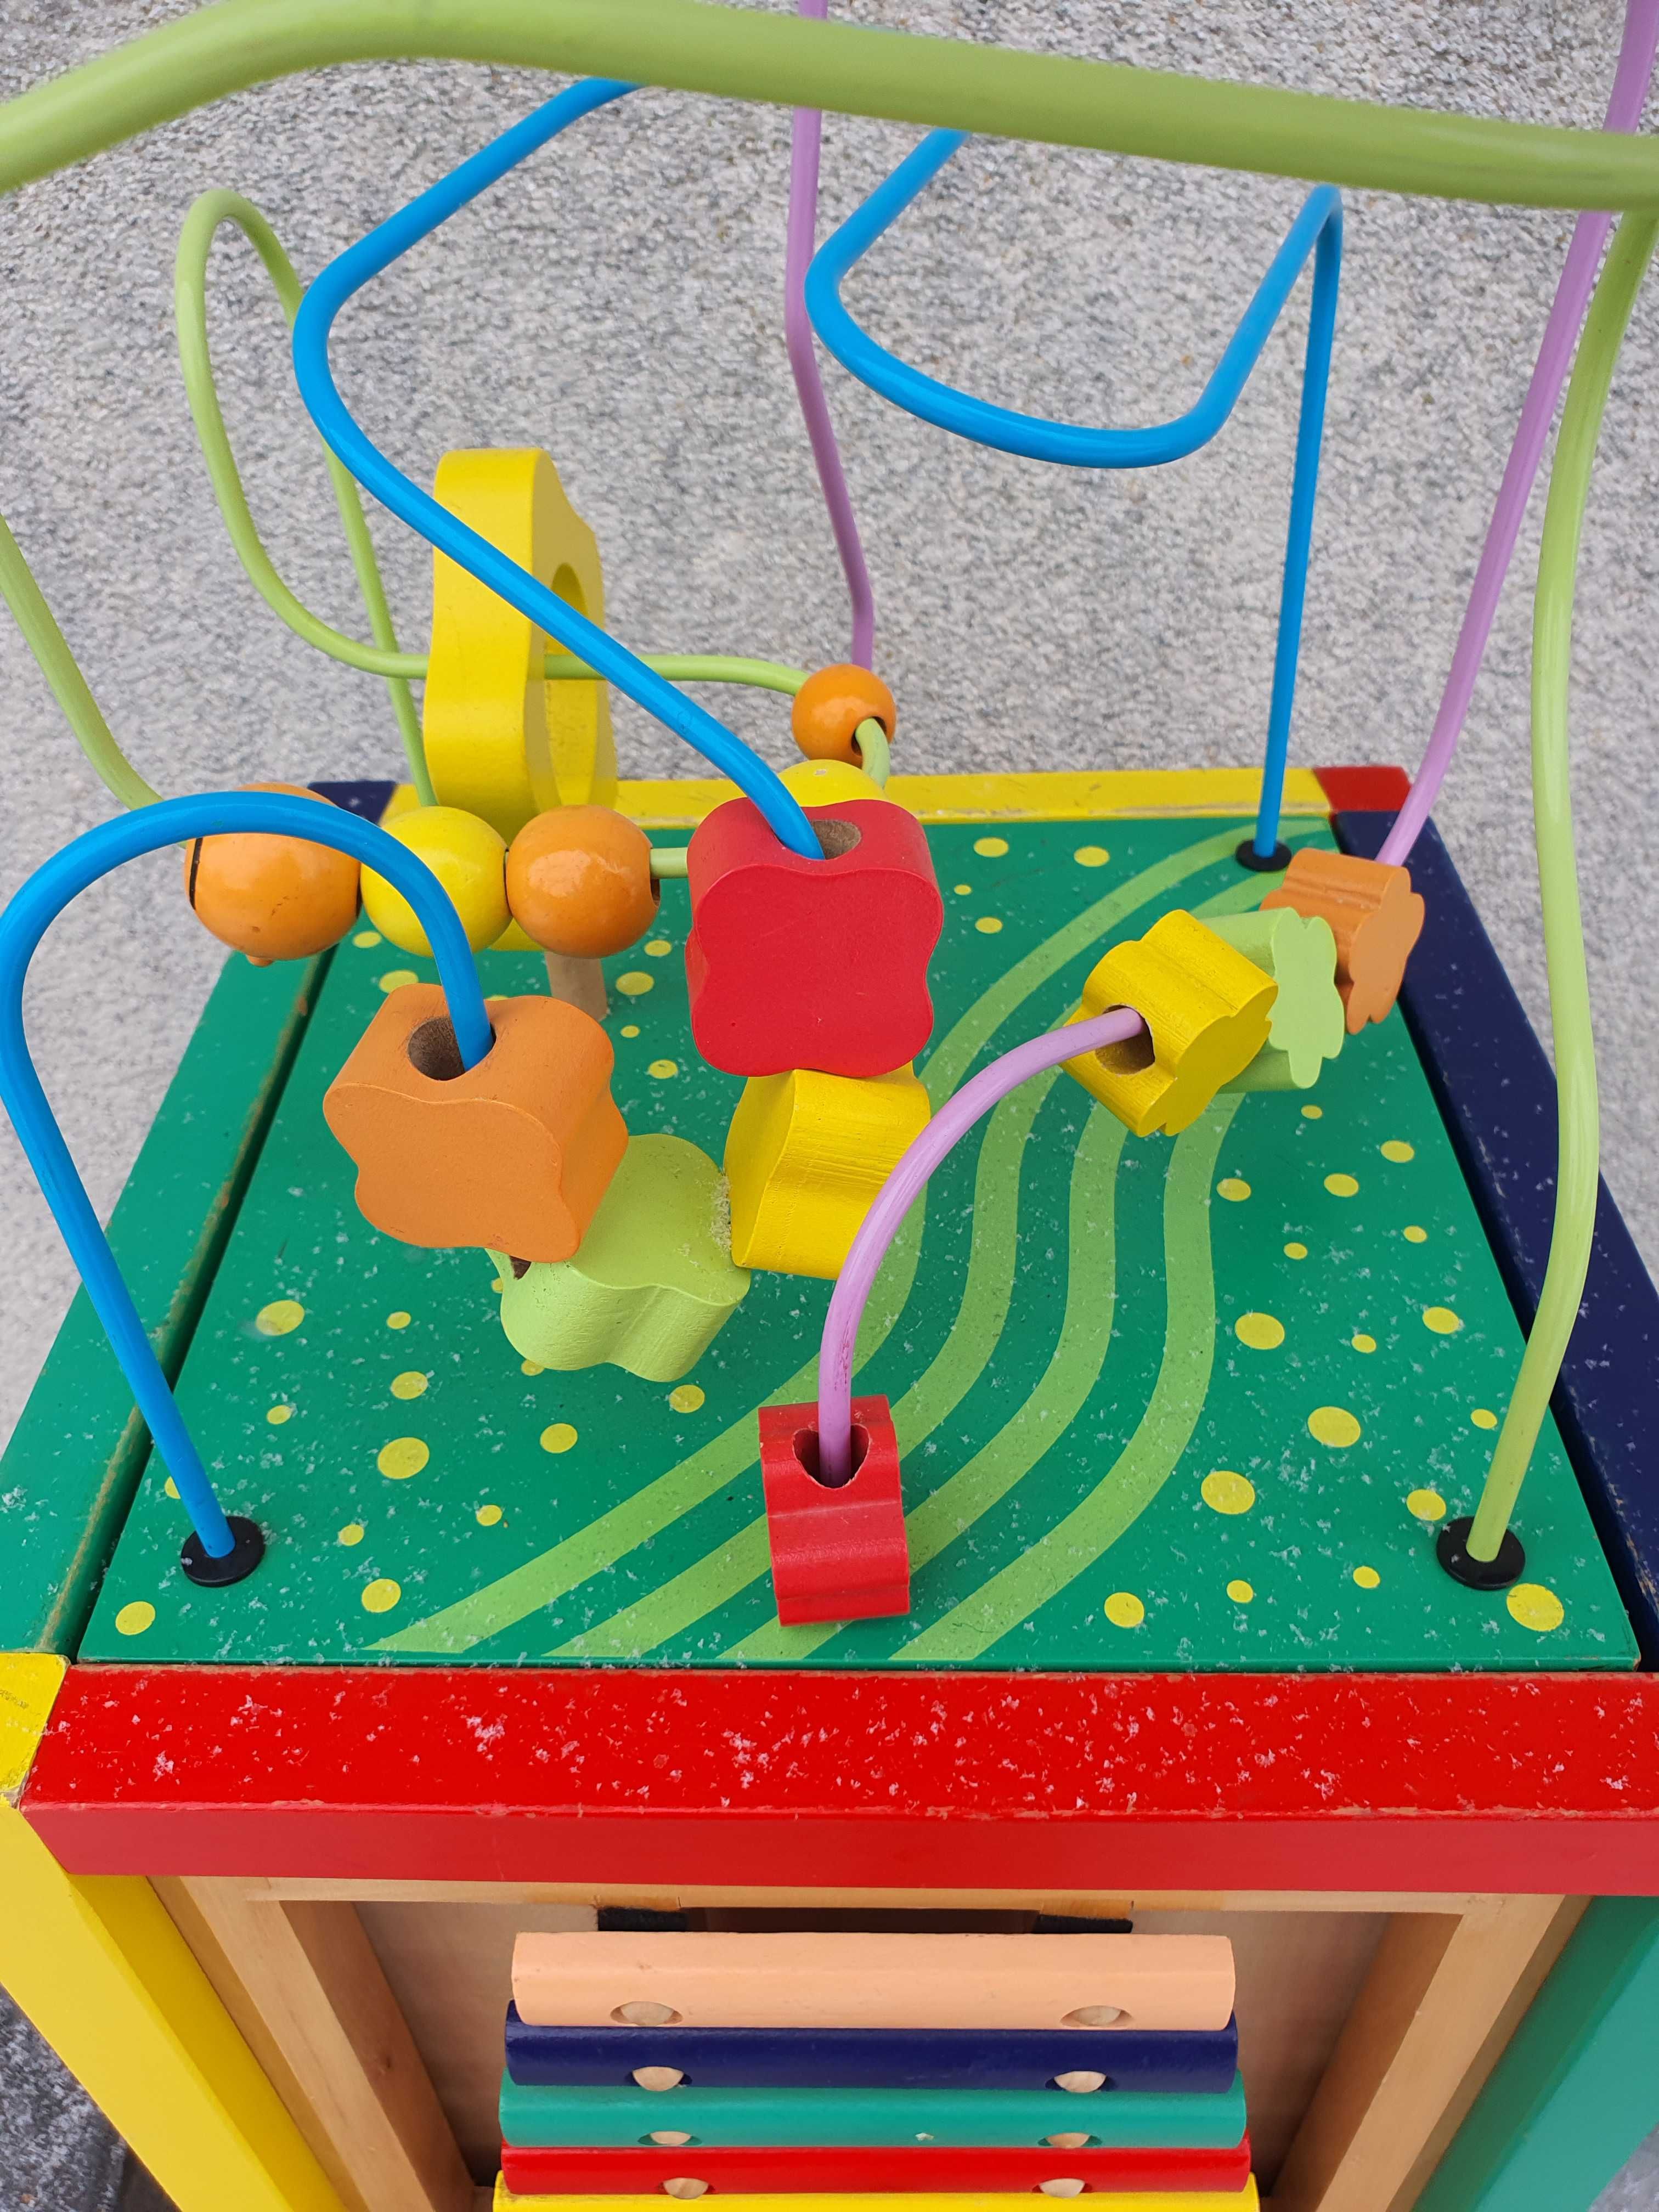 Skrzynia interaktywna, zabawka sensoryczna dla dziecka. Okazja